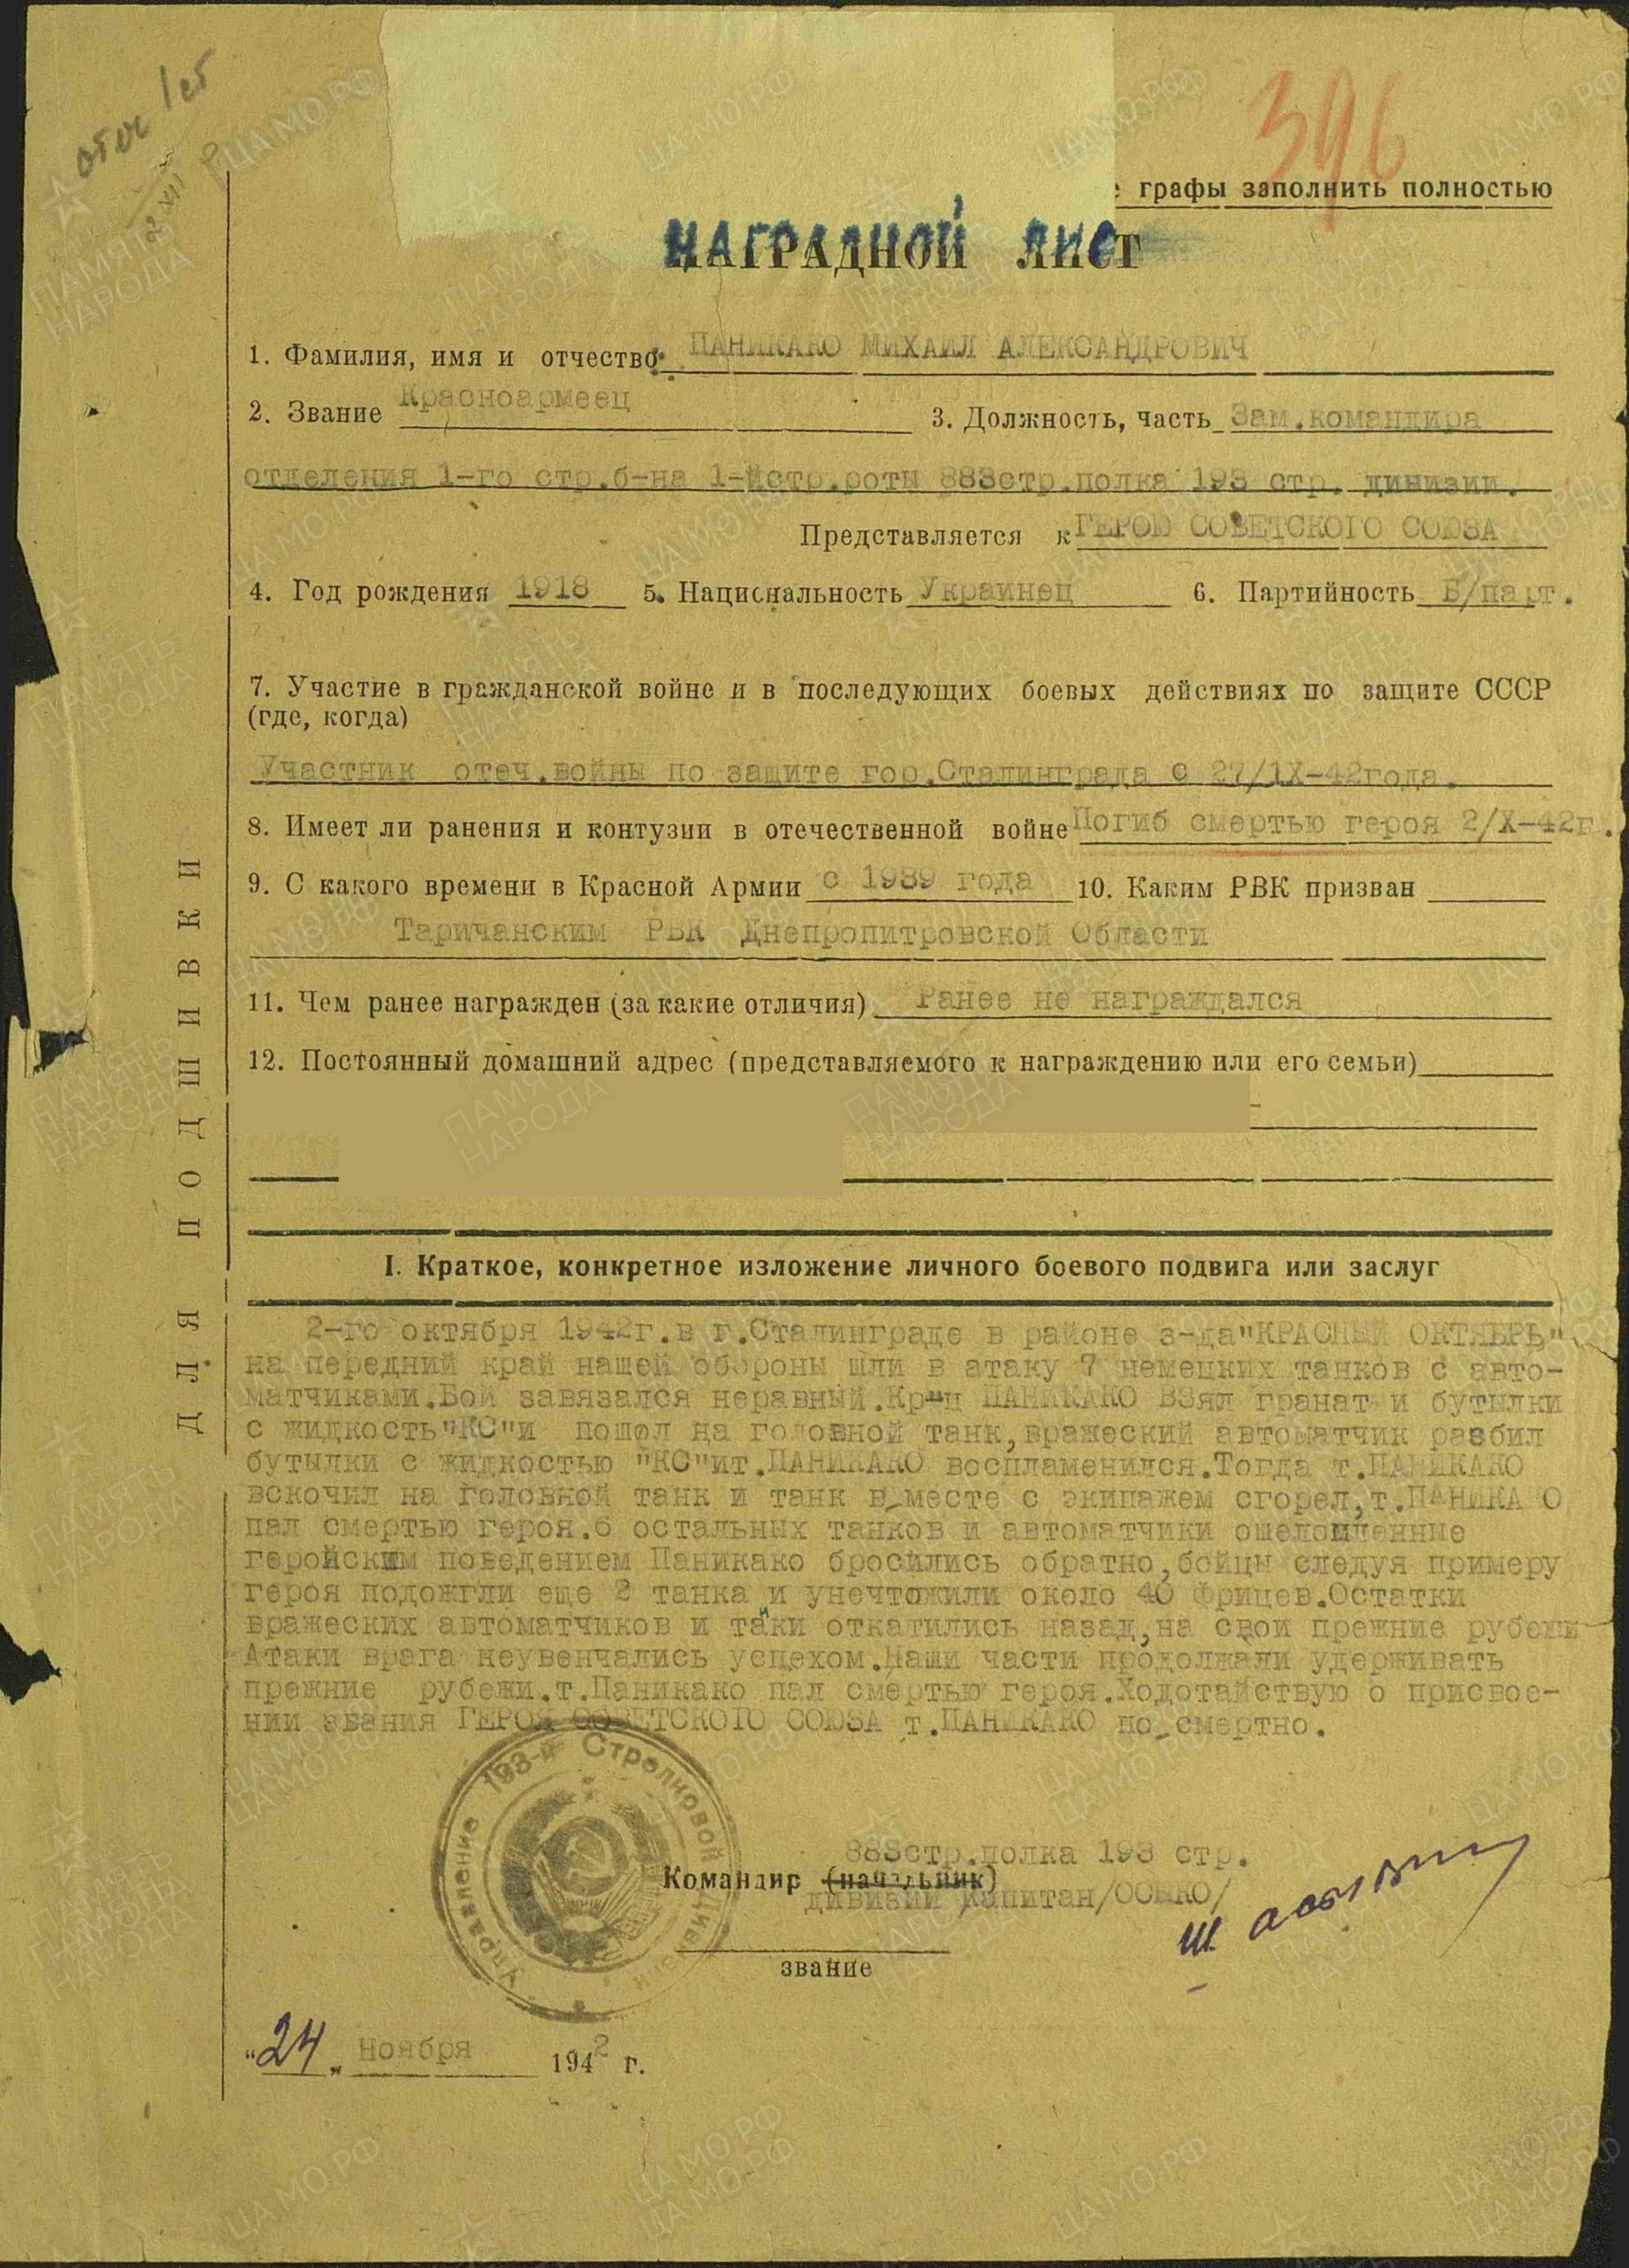 В документах военного времени фамилии и имена иногда писали с ошибками